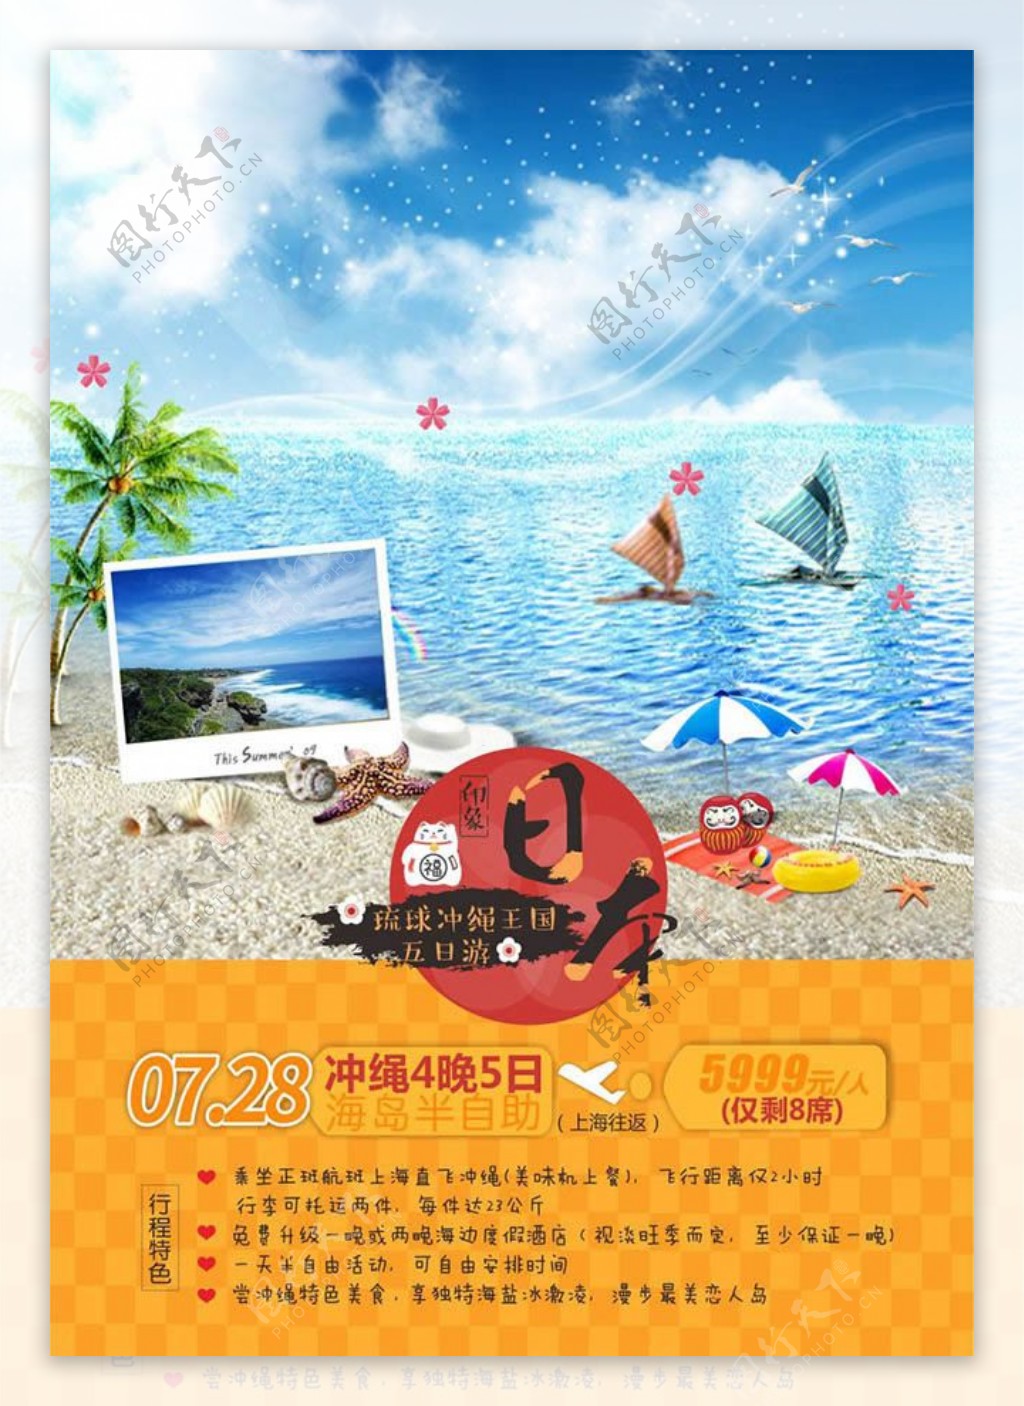 日本5日游旅游海报设计cdr素材